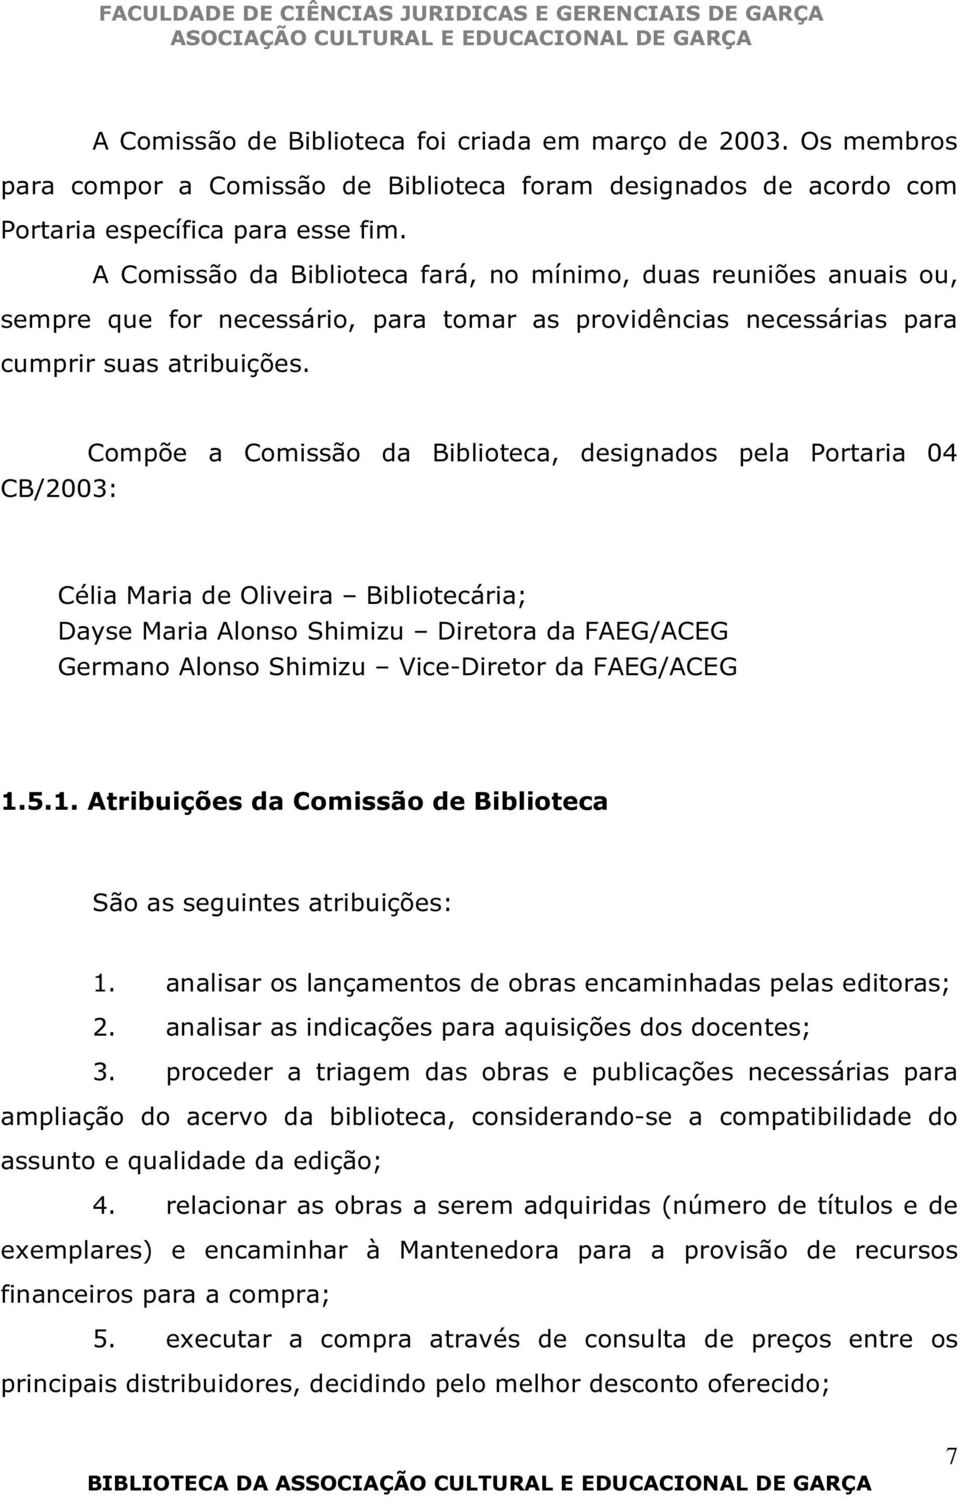 CB/2003: Compõe a Comissão da Biblioteca, designados pela Portaria 04 Célia Maria de Oliveira Bibliotecária; Dayse Maria Alonso Shimizu Diretora da FAEG/ACEG Germano Alonso Shimizu Vice-Diretor da